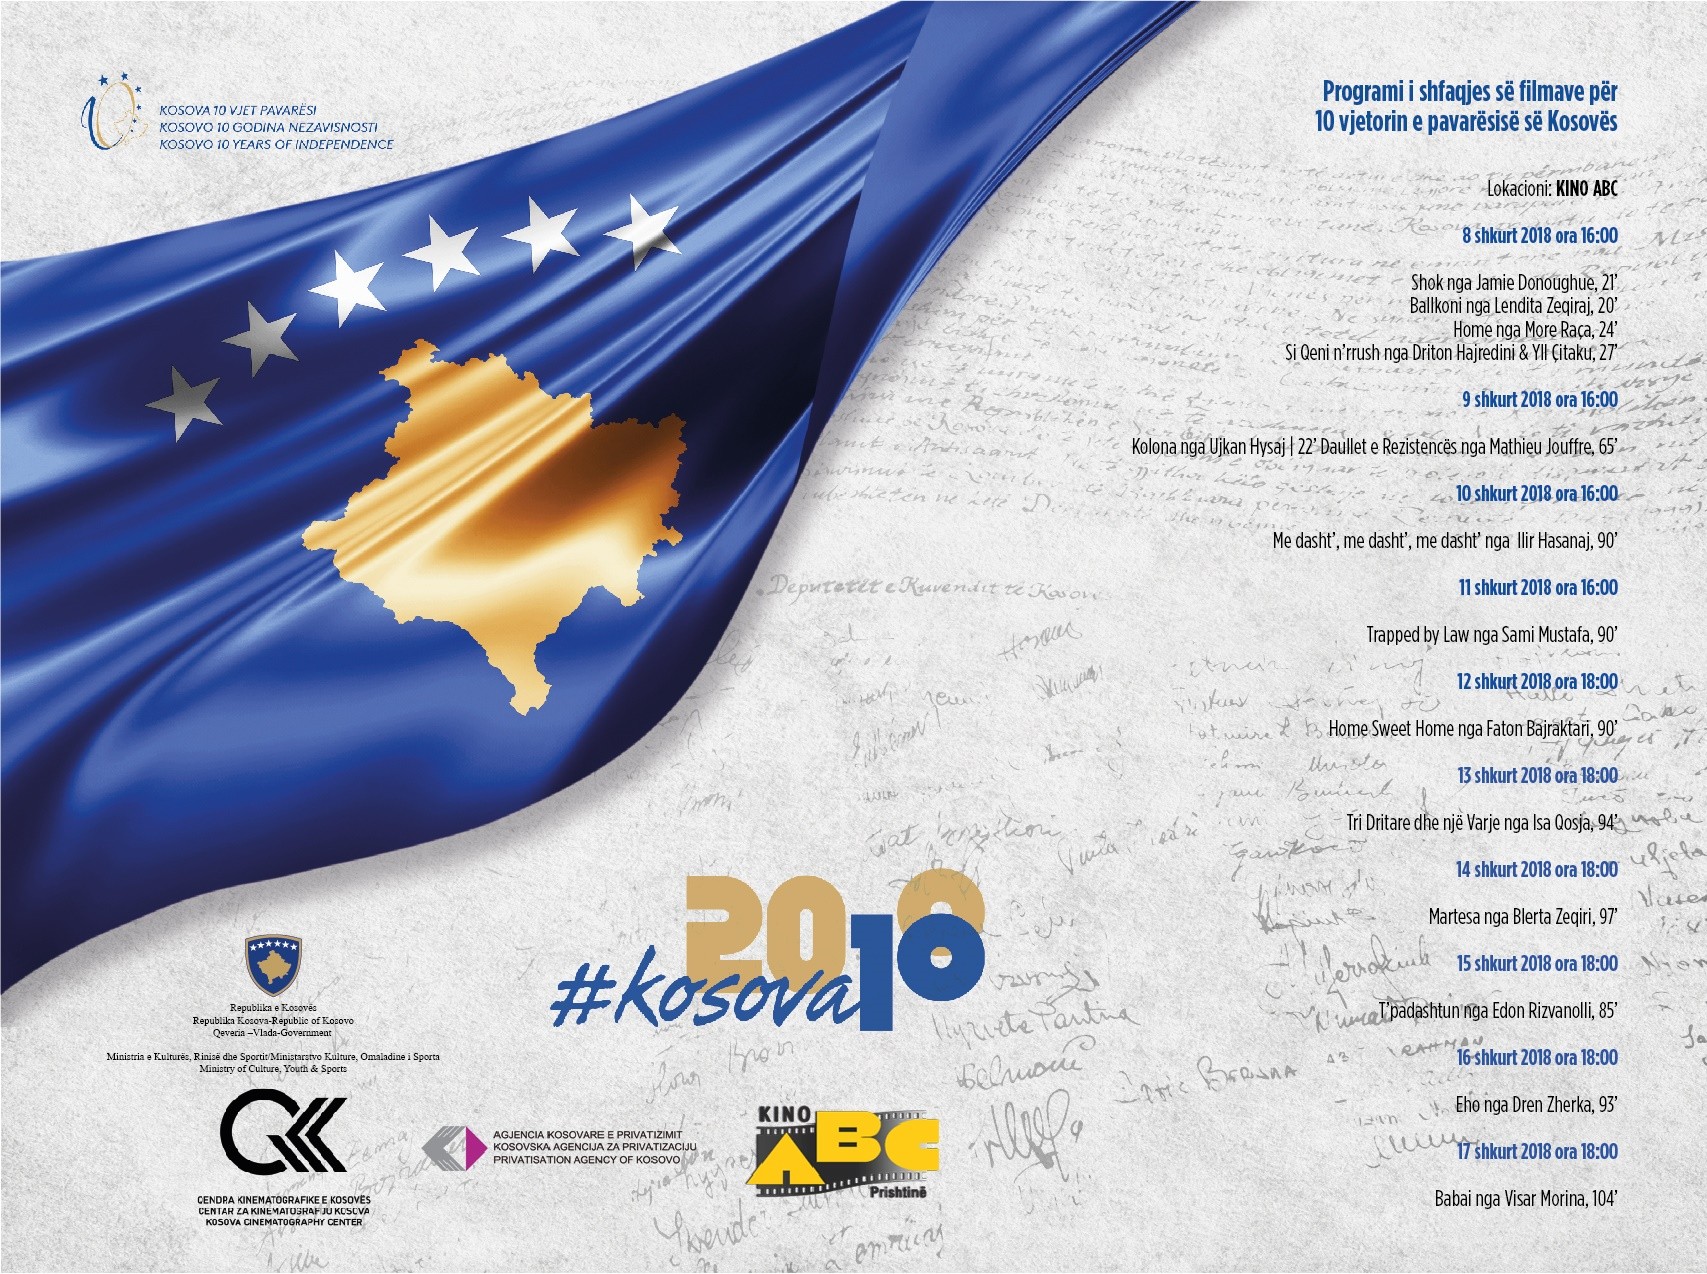 14 filma kosovarë do të shfaqen në Kino ABC për 10 vjetorin e Pavarësisë 